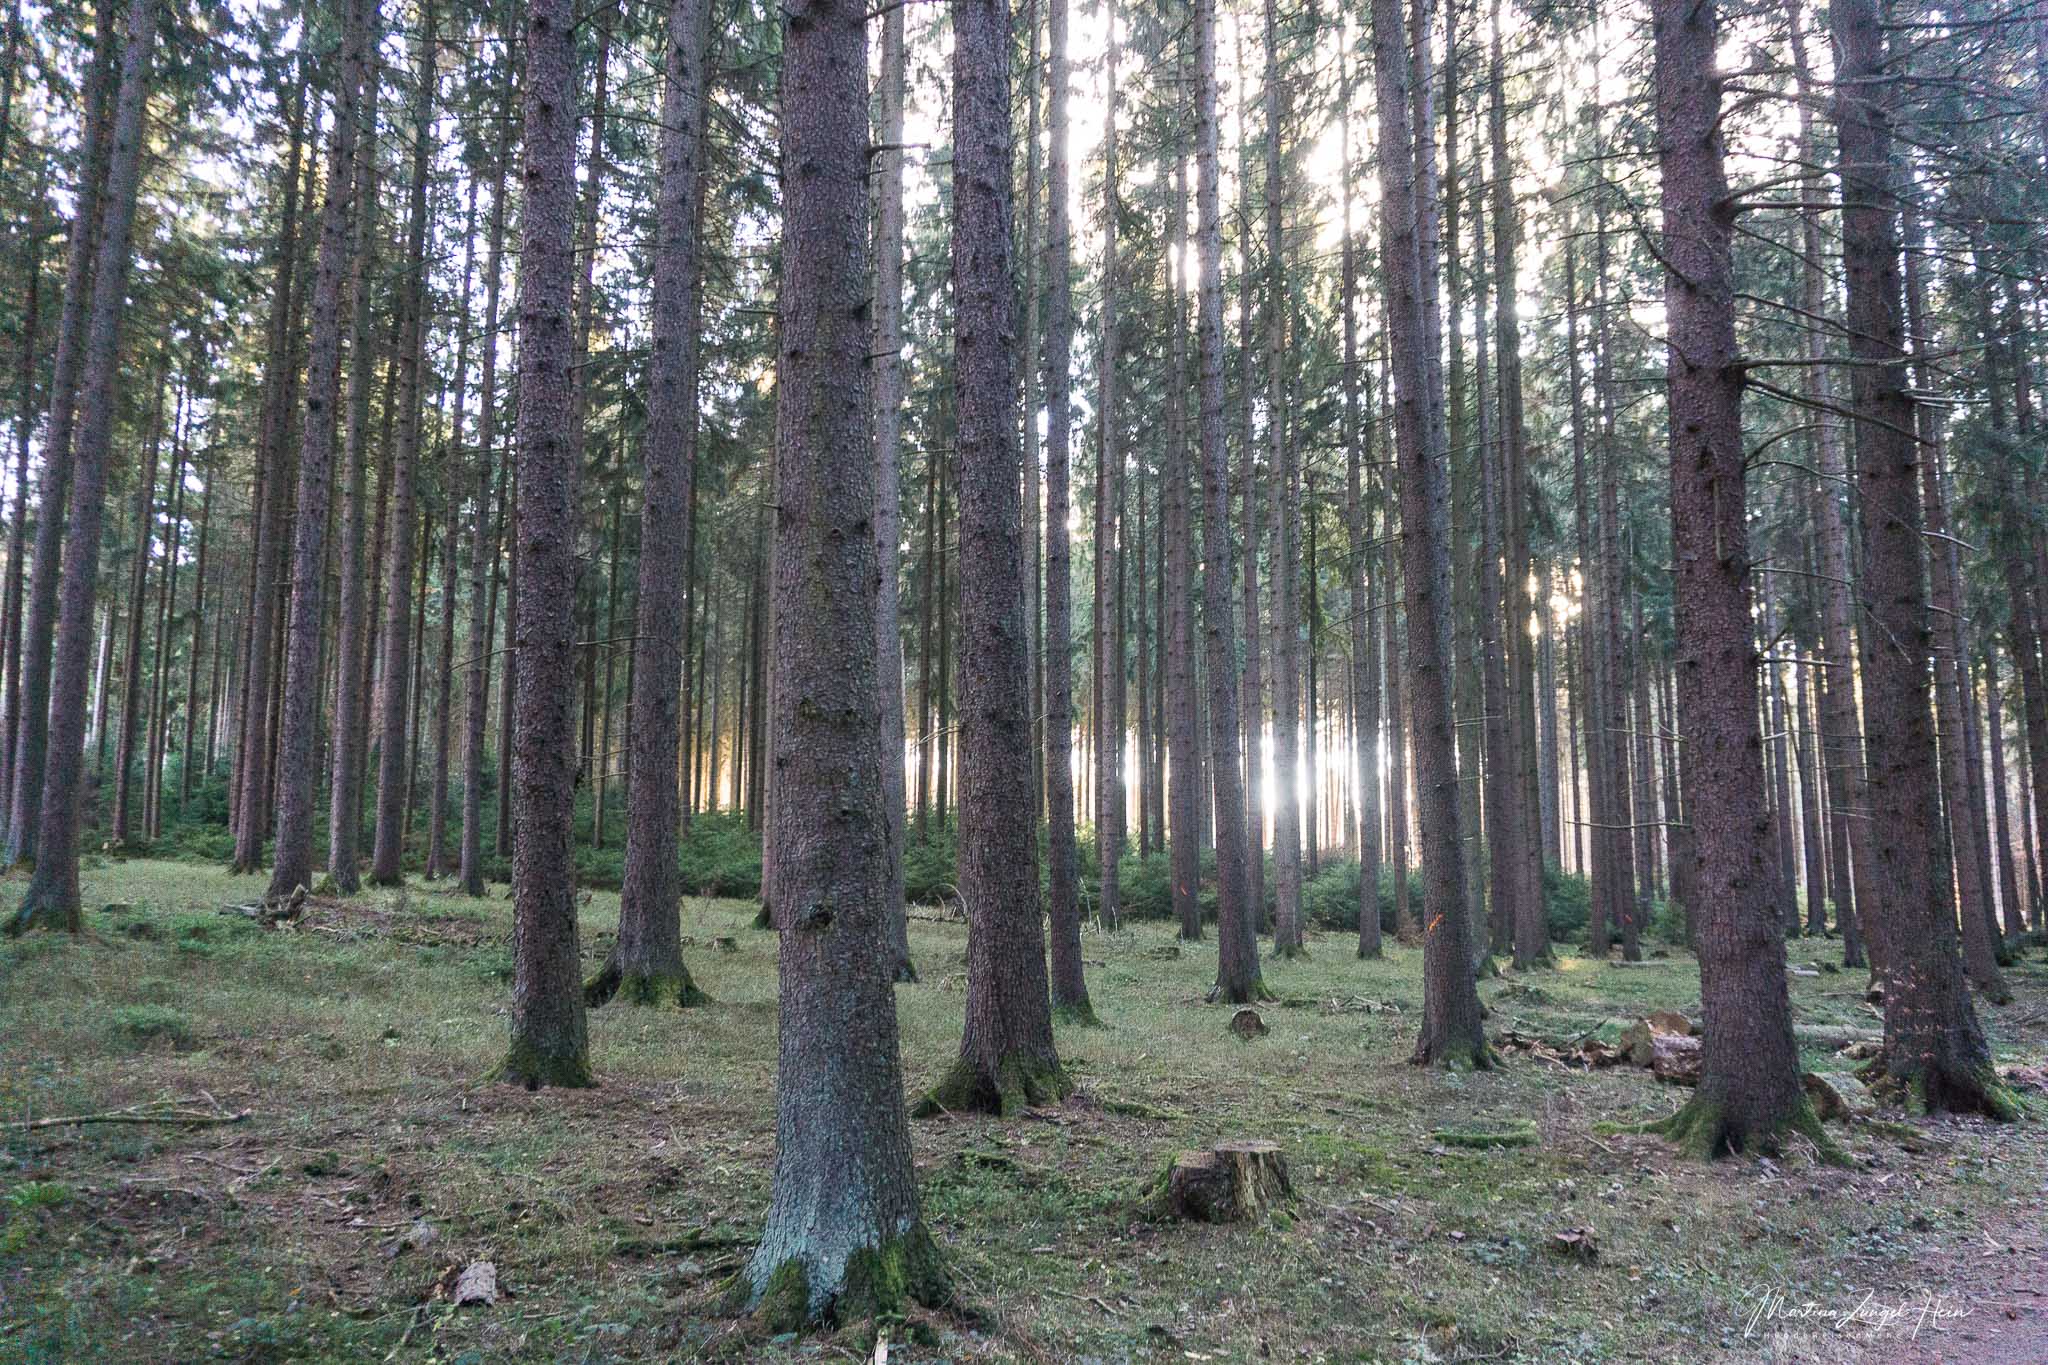 Wer ein bisschen Zeit mitbringt, kann sich auf der 4 km langen Wäller Tour Multitalent Wald eingehend über den Lebensraum Wald informieren